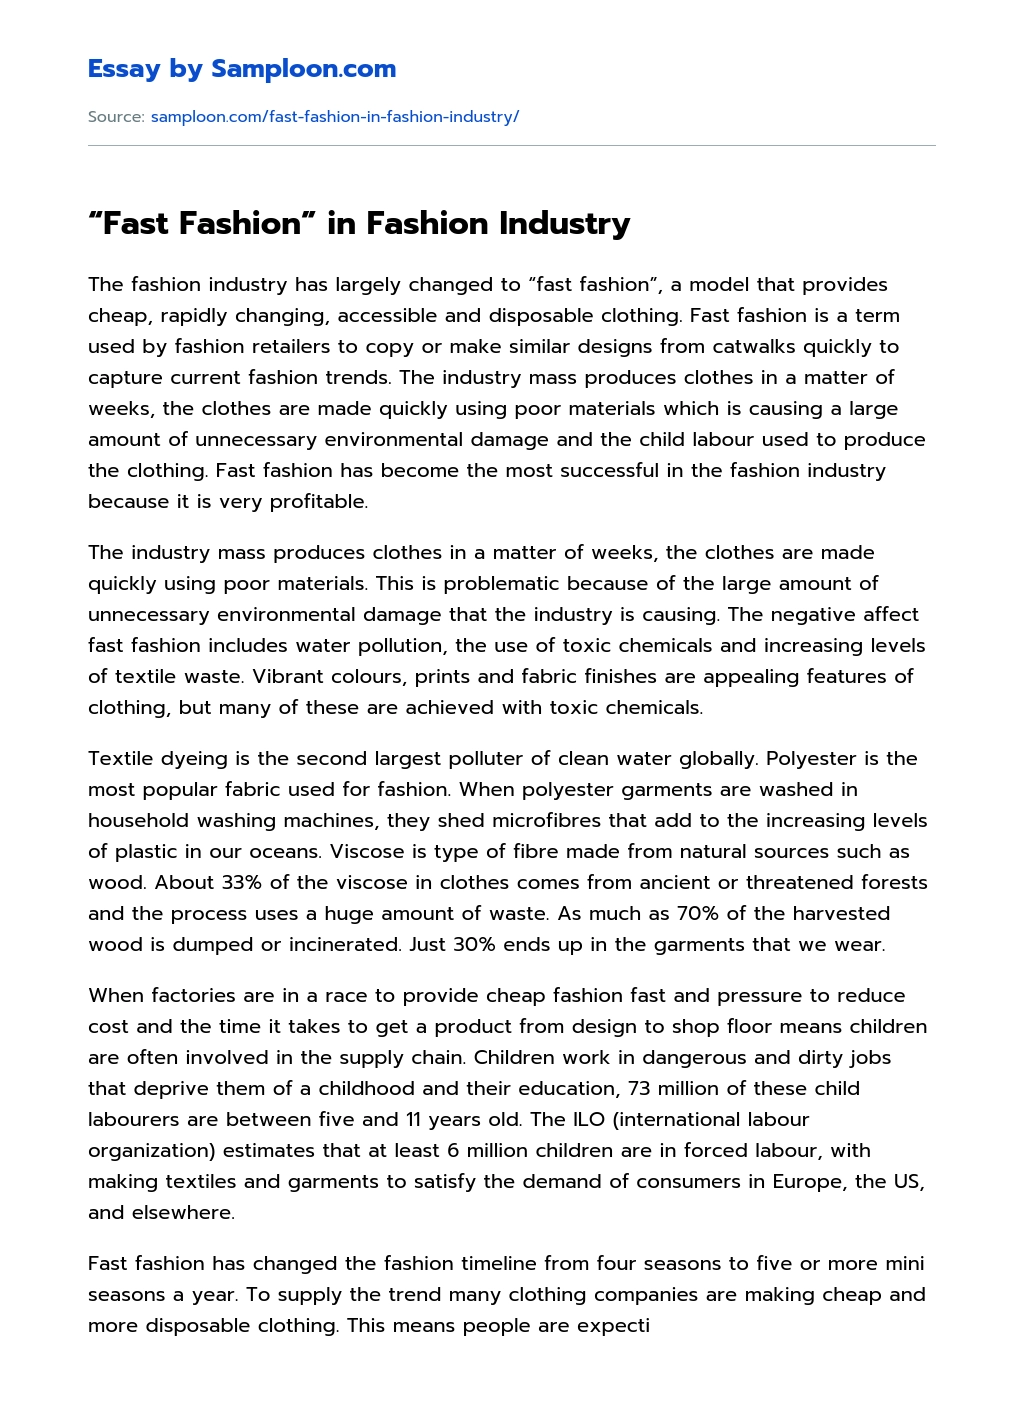 argumentative essay on fashion industry